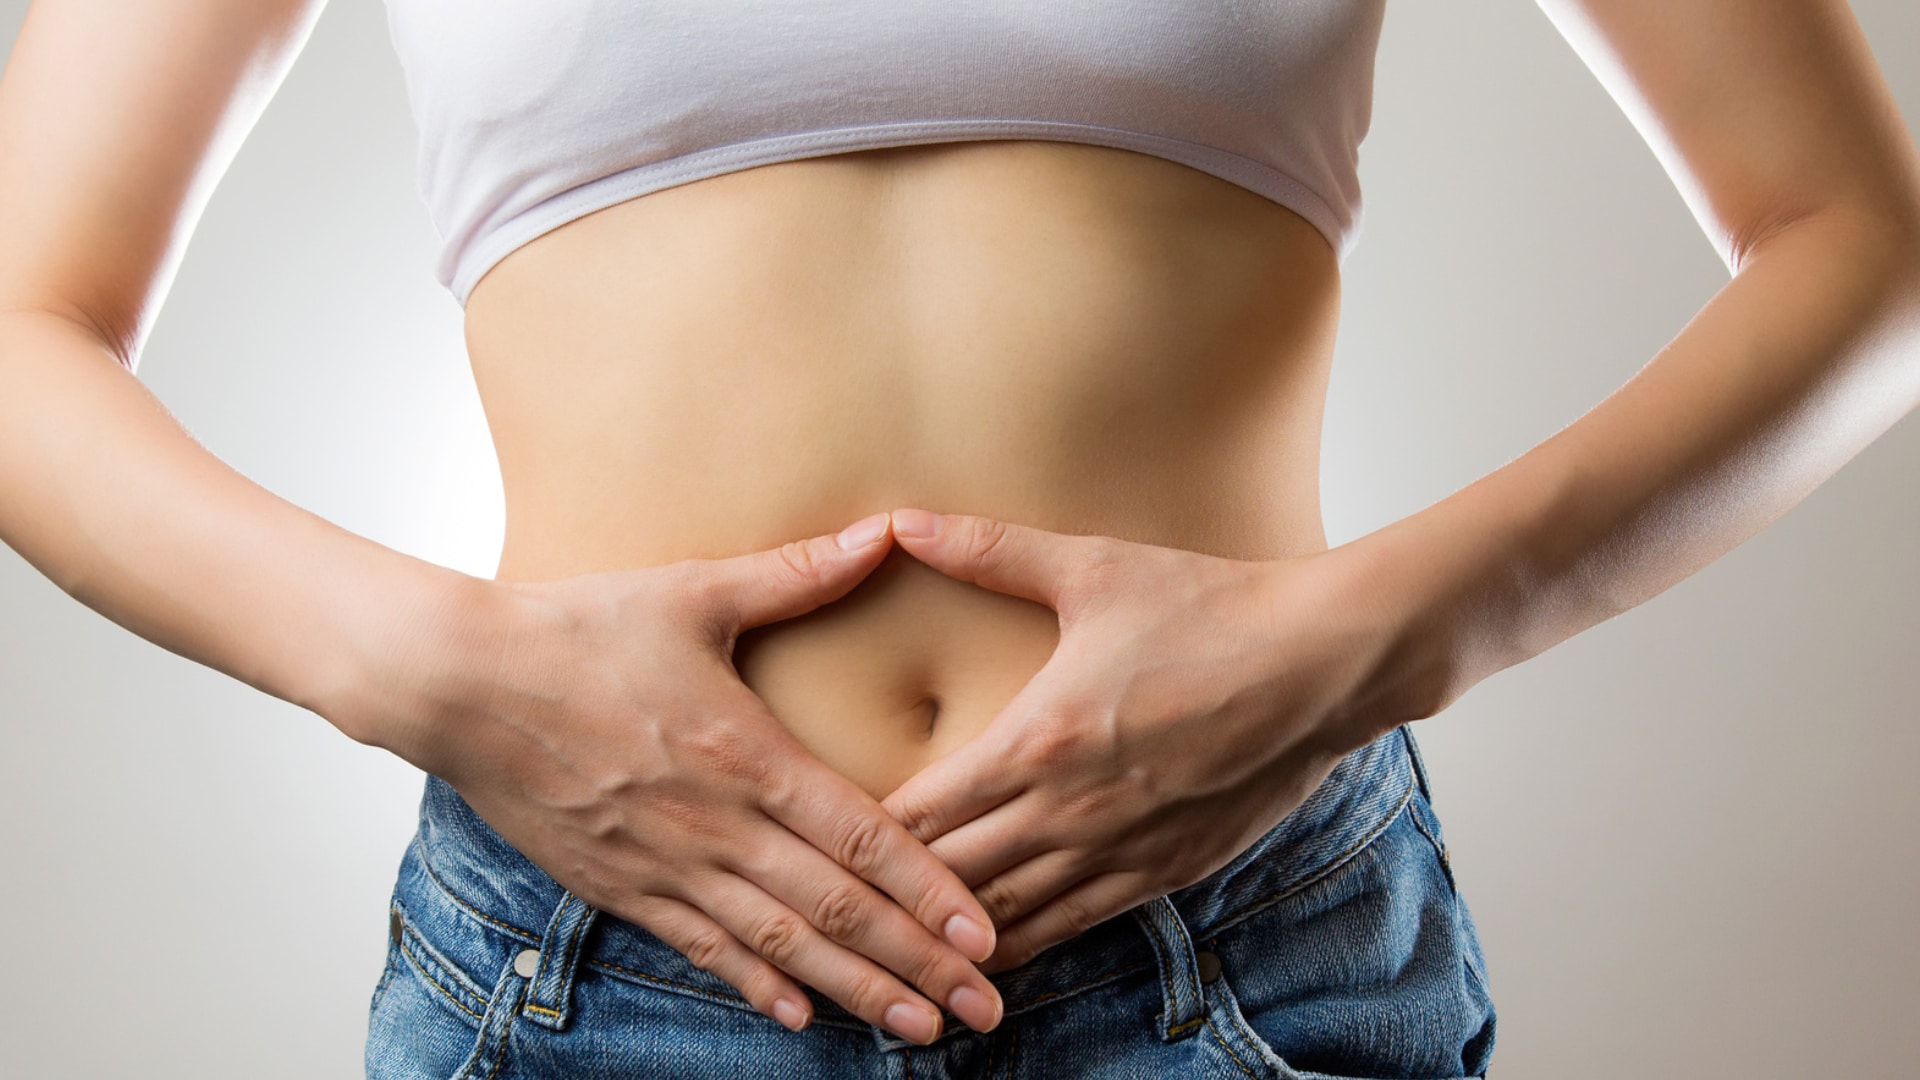 Découvrez comment éviter les problèmes de digestion tels que constipation, ballonnements et lourdeurs avec des solutions naturelles pour un transit intestinal sain.